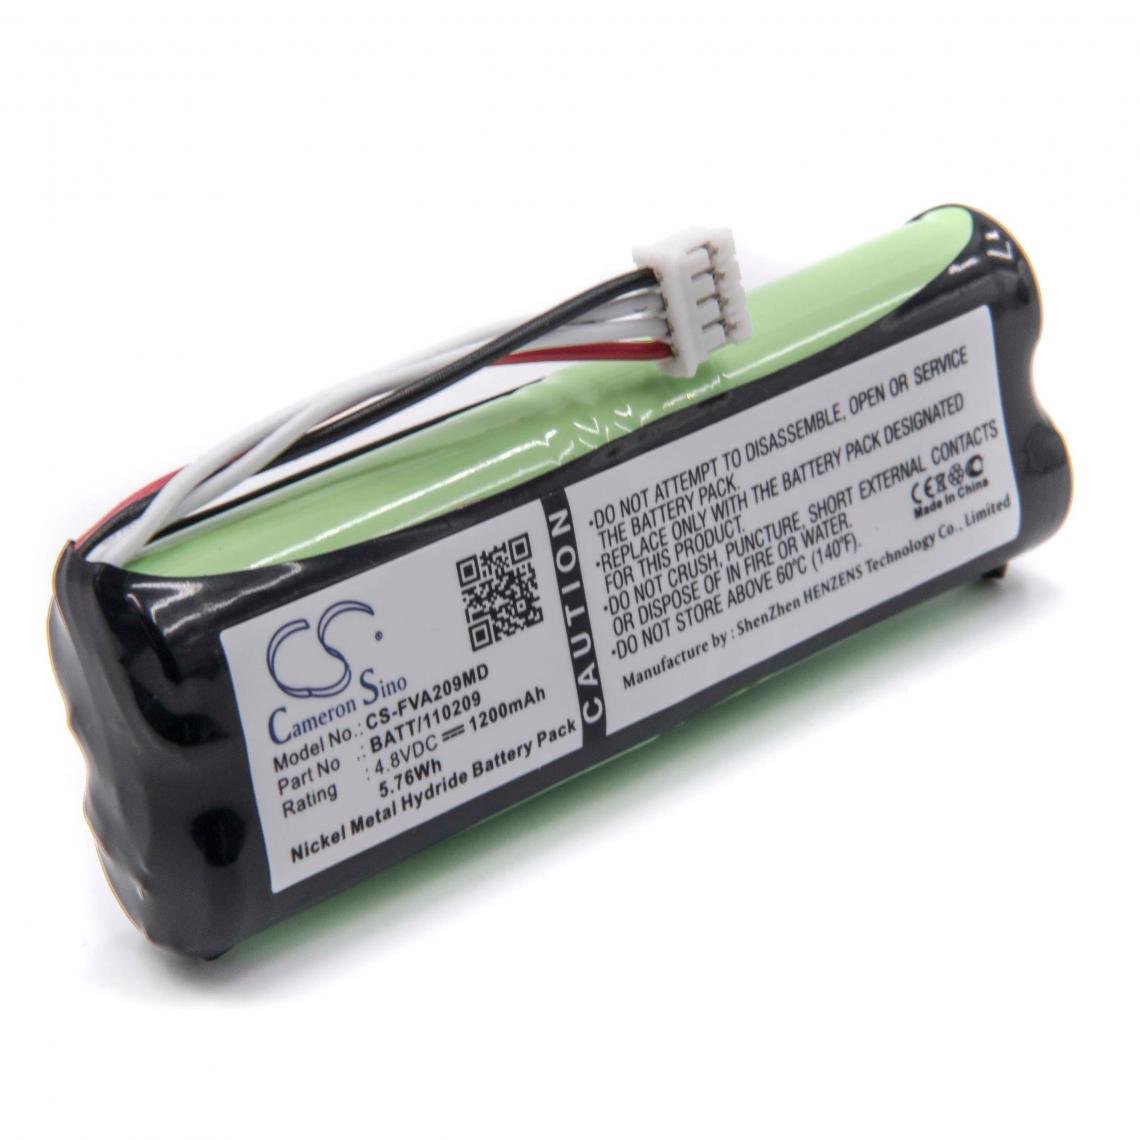 Vhbw - vhbw Batterie compatible avec Fresenius Applix Pump Smart, Smart Long Nutrition Pump, Vial EP appareil médical (1200mAh, 4,8V, NiMH) - Piles spécifiques